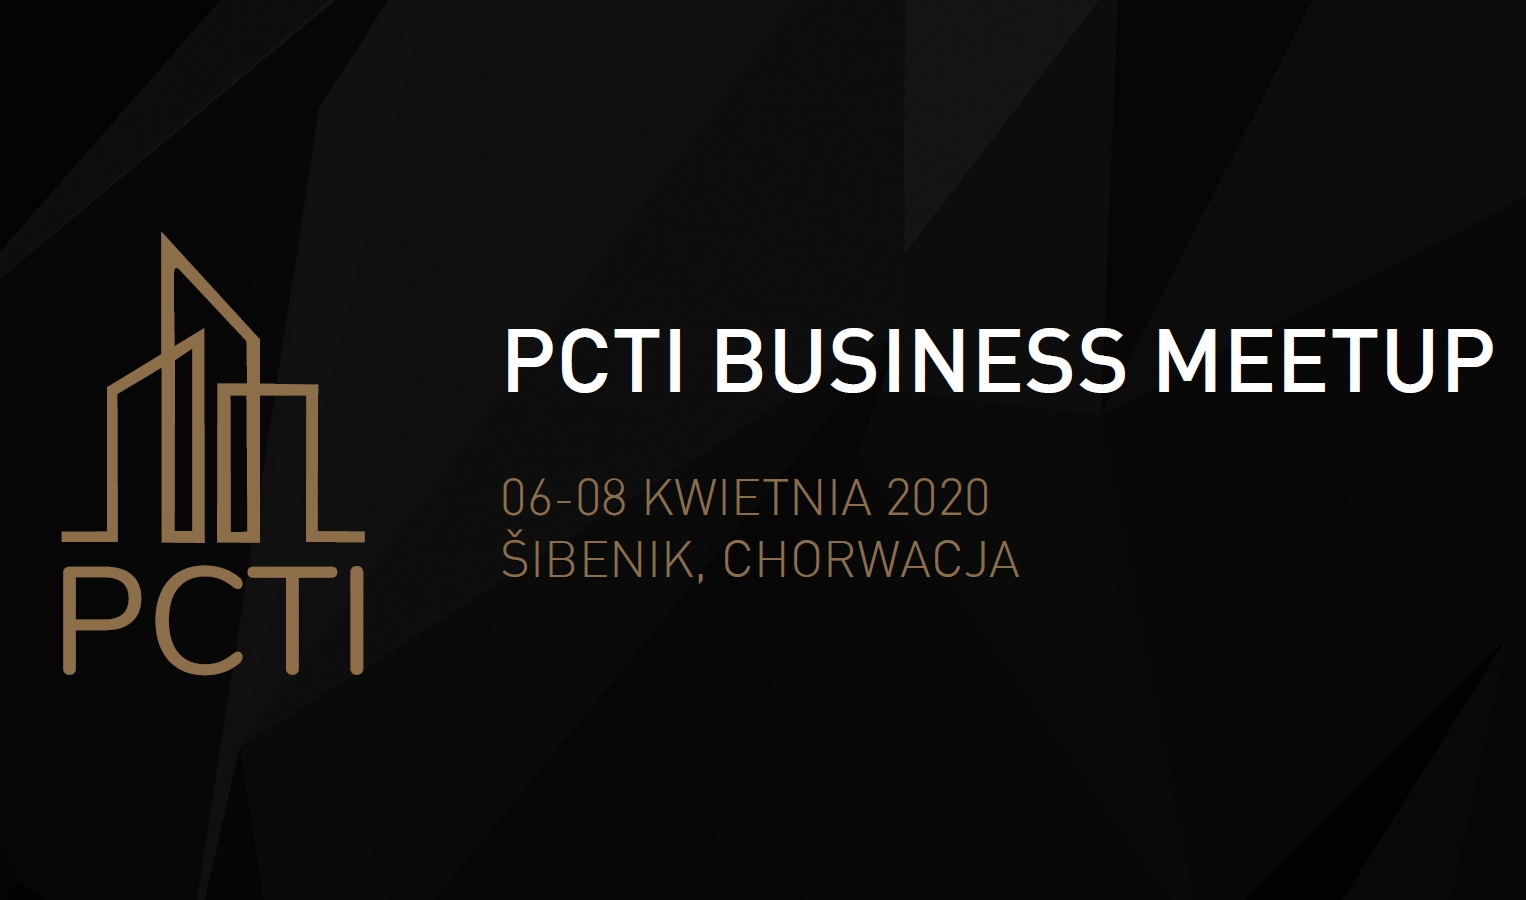 Pierwszy w historii PCTI Business MeetUp w Chorwacji - 06-08 kwietnia 2020 / Sibenik